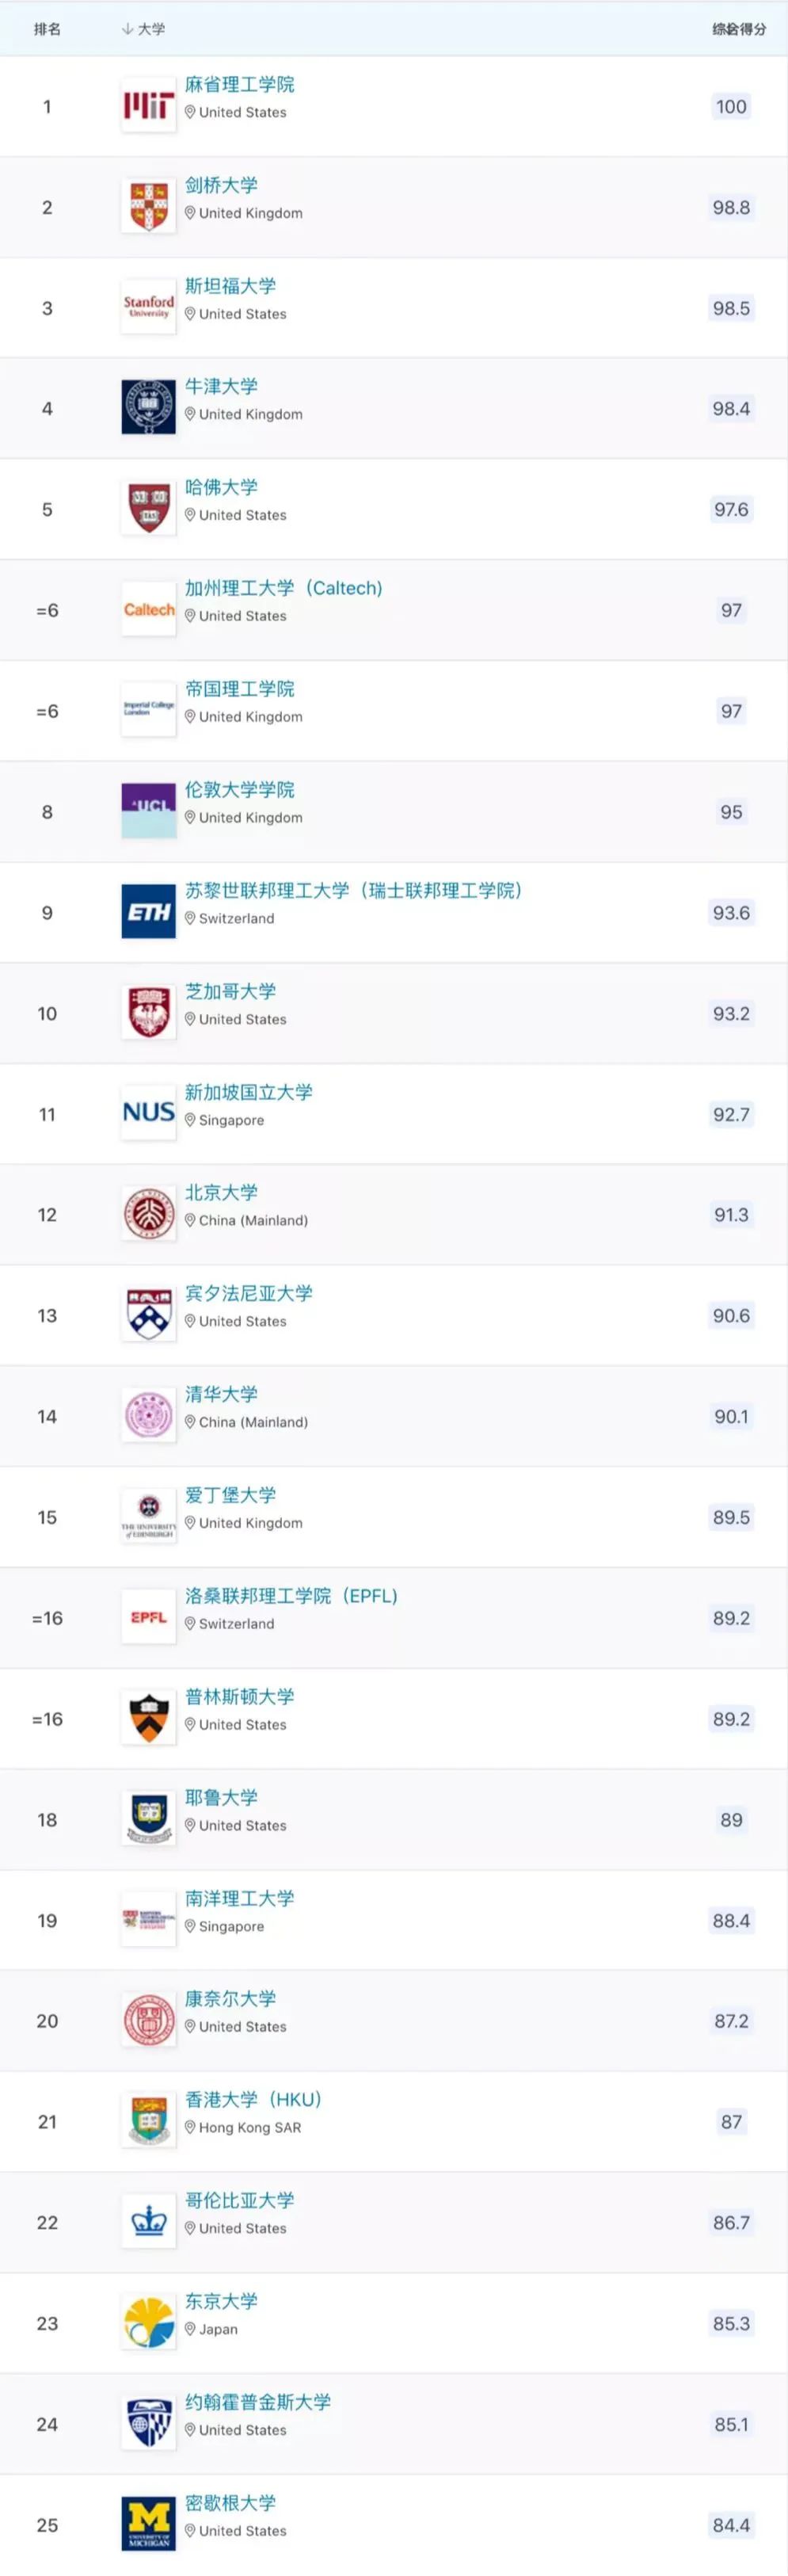 2023QS世界大学排名的Top100榜单 (1).jpg